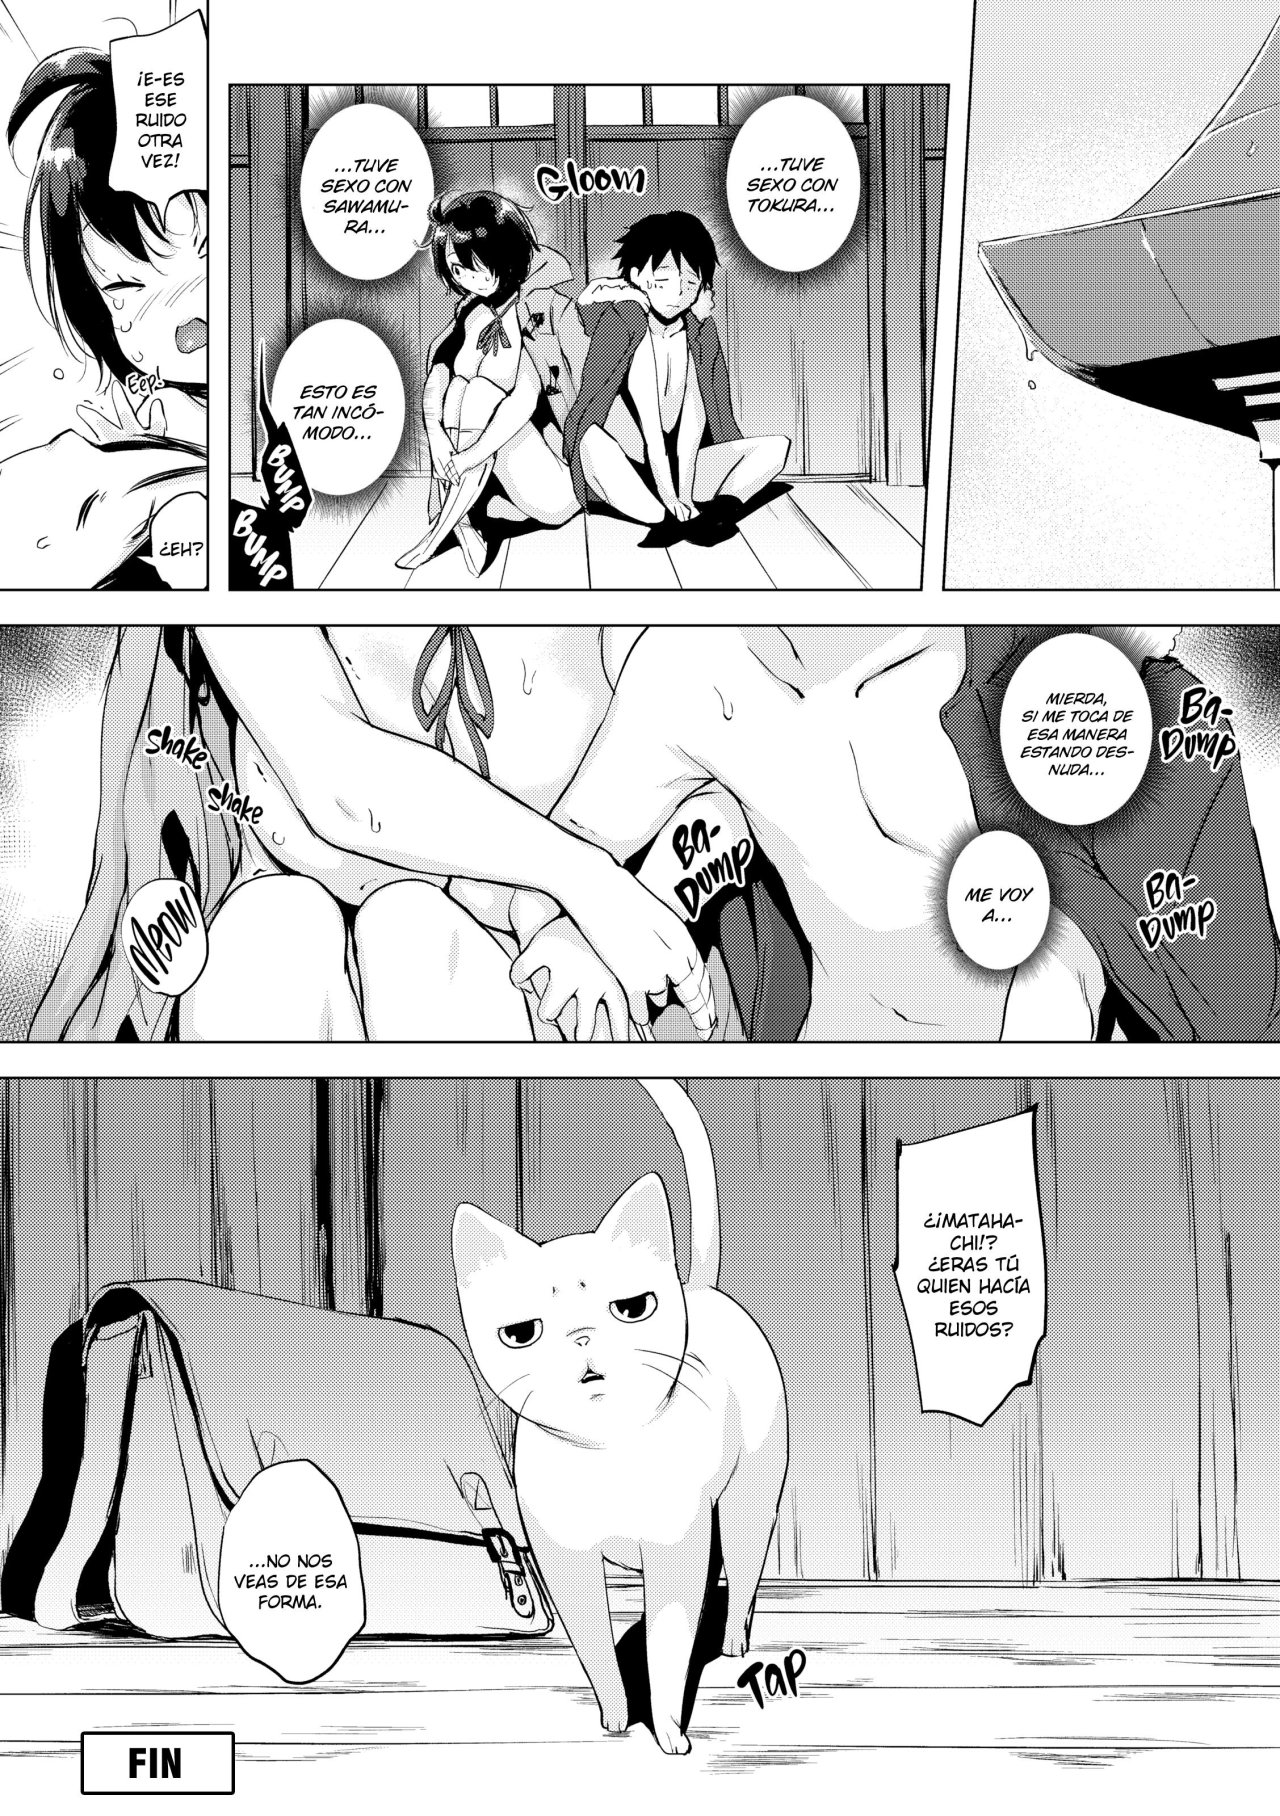 Tokura-san ama los gatos - 20